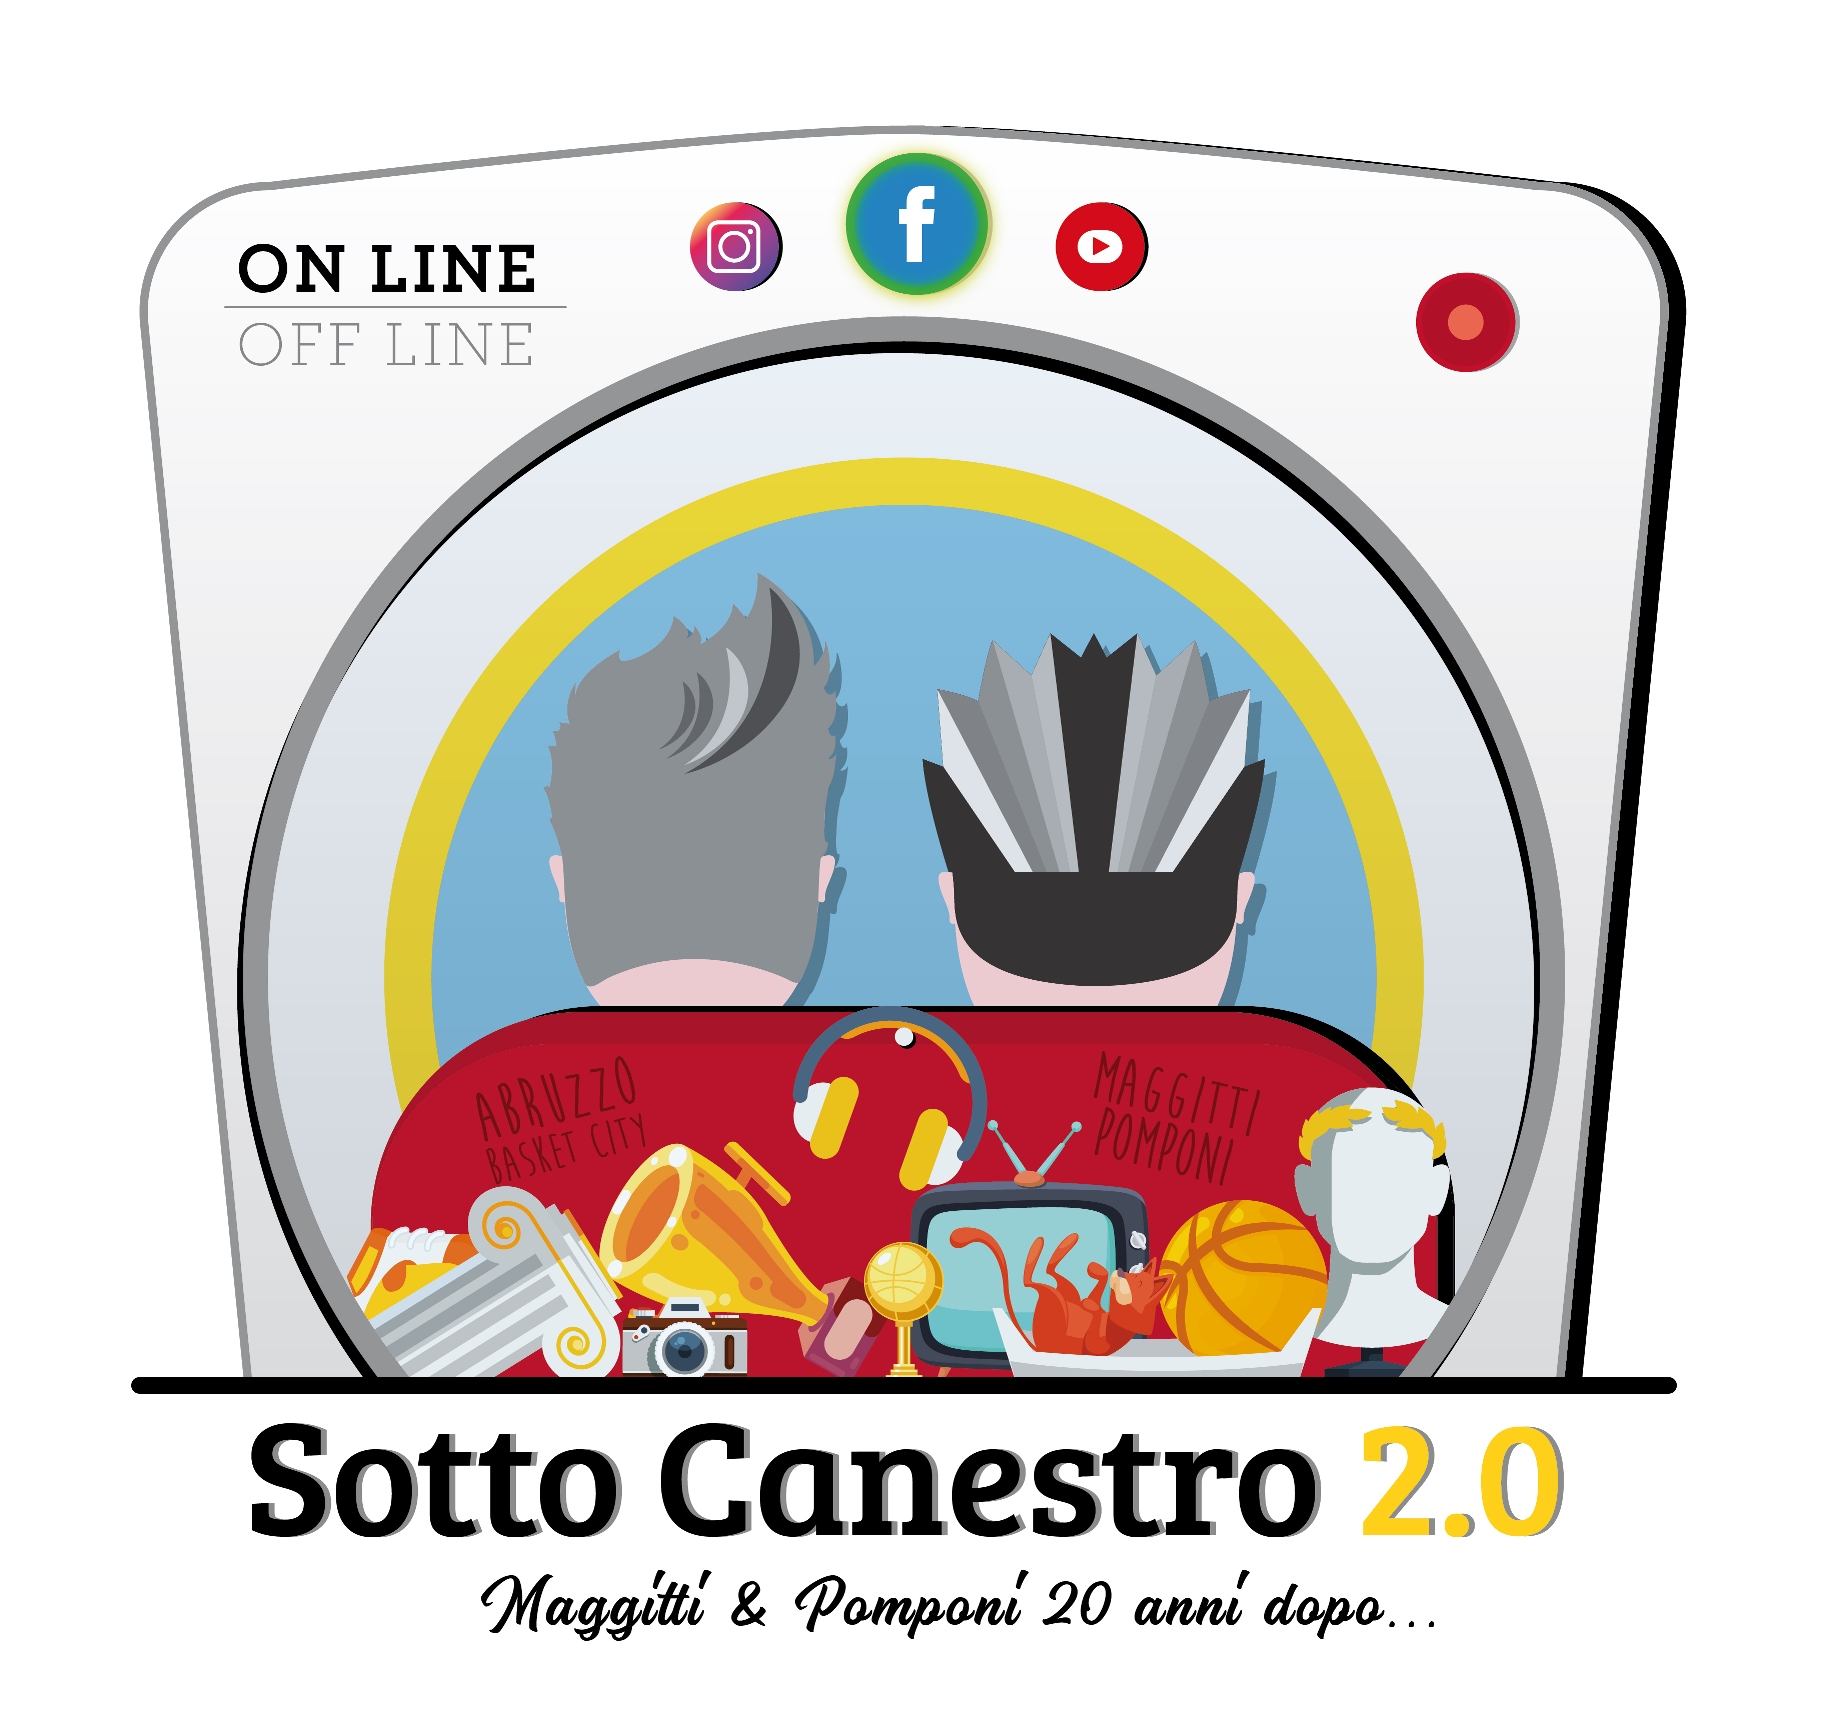 Sotto Canestro 2.0 logo